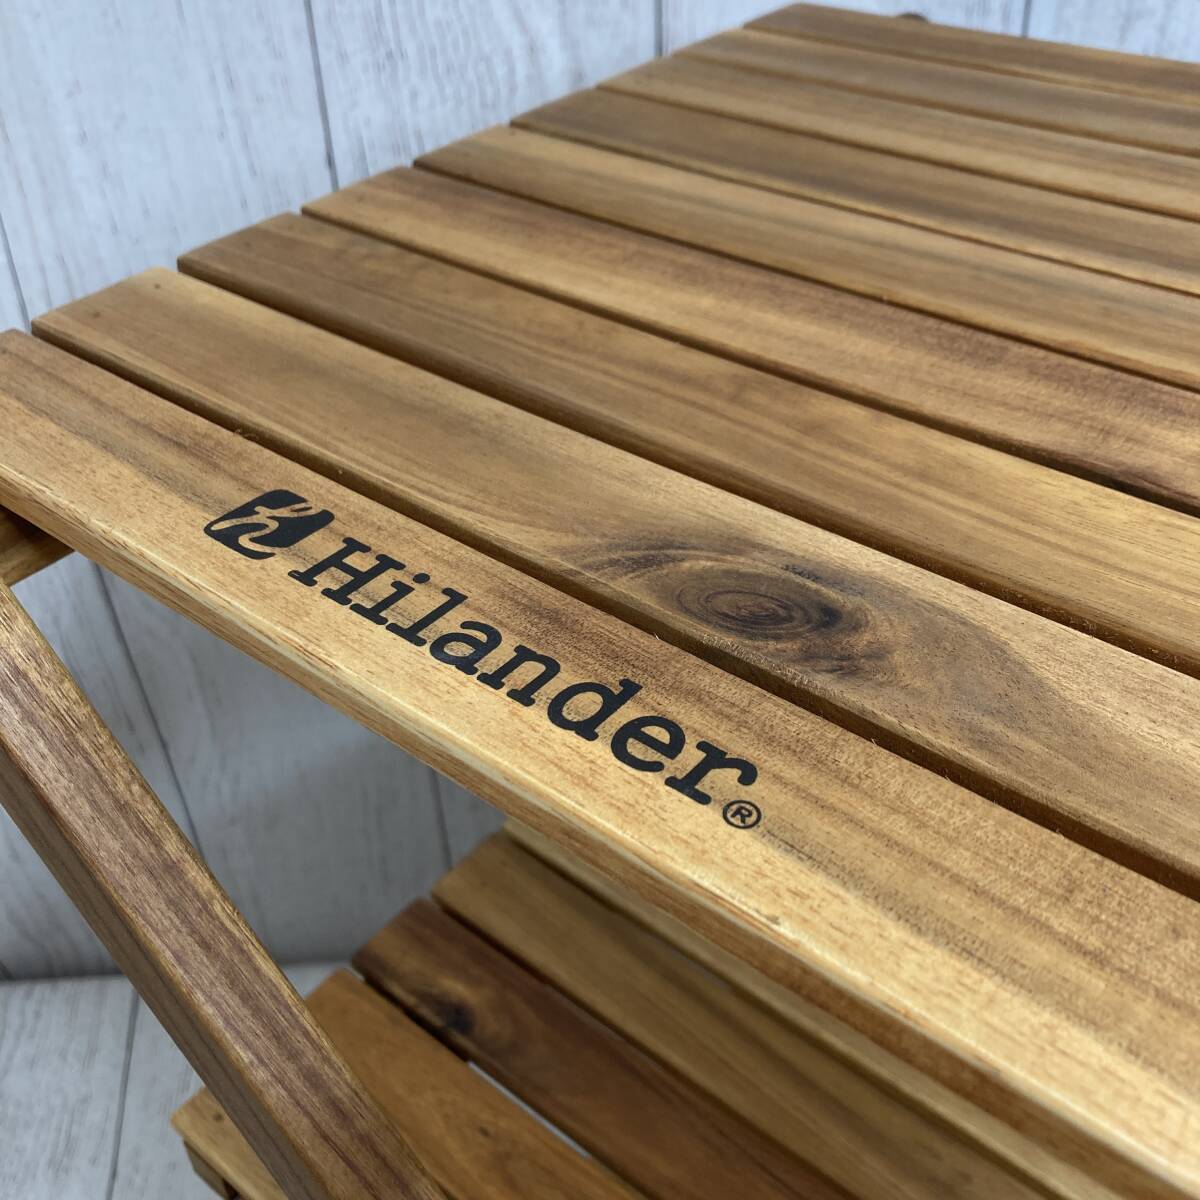 【新品未開封】Hilander(ハイランダー) ウッドラック 3段 専用ケース付き 木製ラック 425 HCTT-001/Y20274-W3_画像6